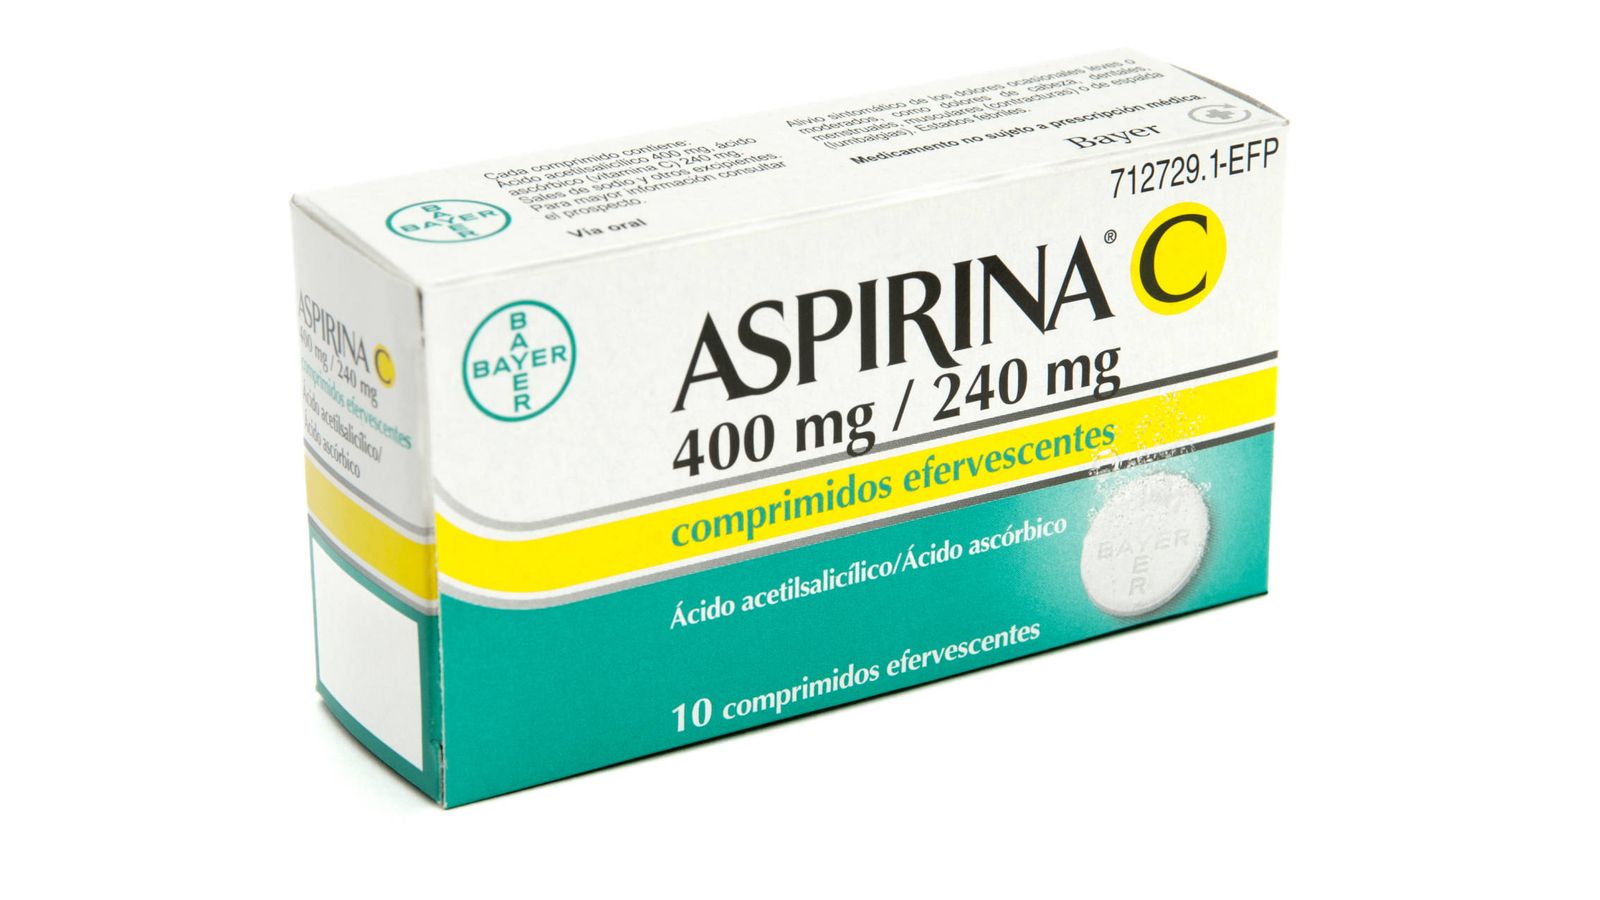 Foto: Caja de Aspirina C efervescente 400mg /240mg